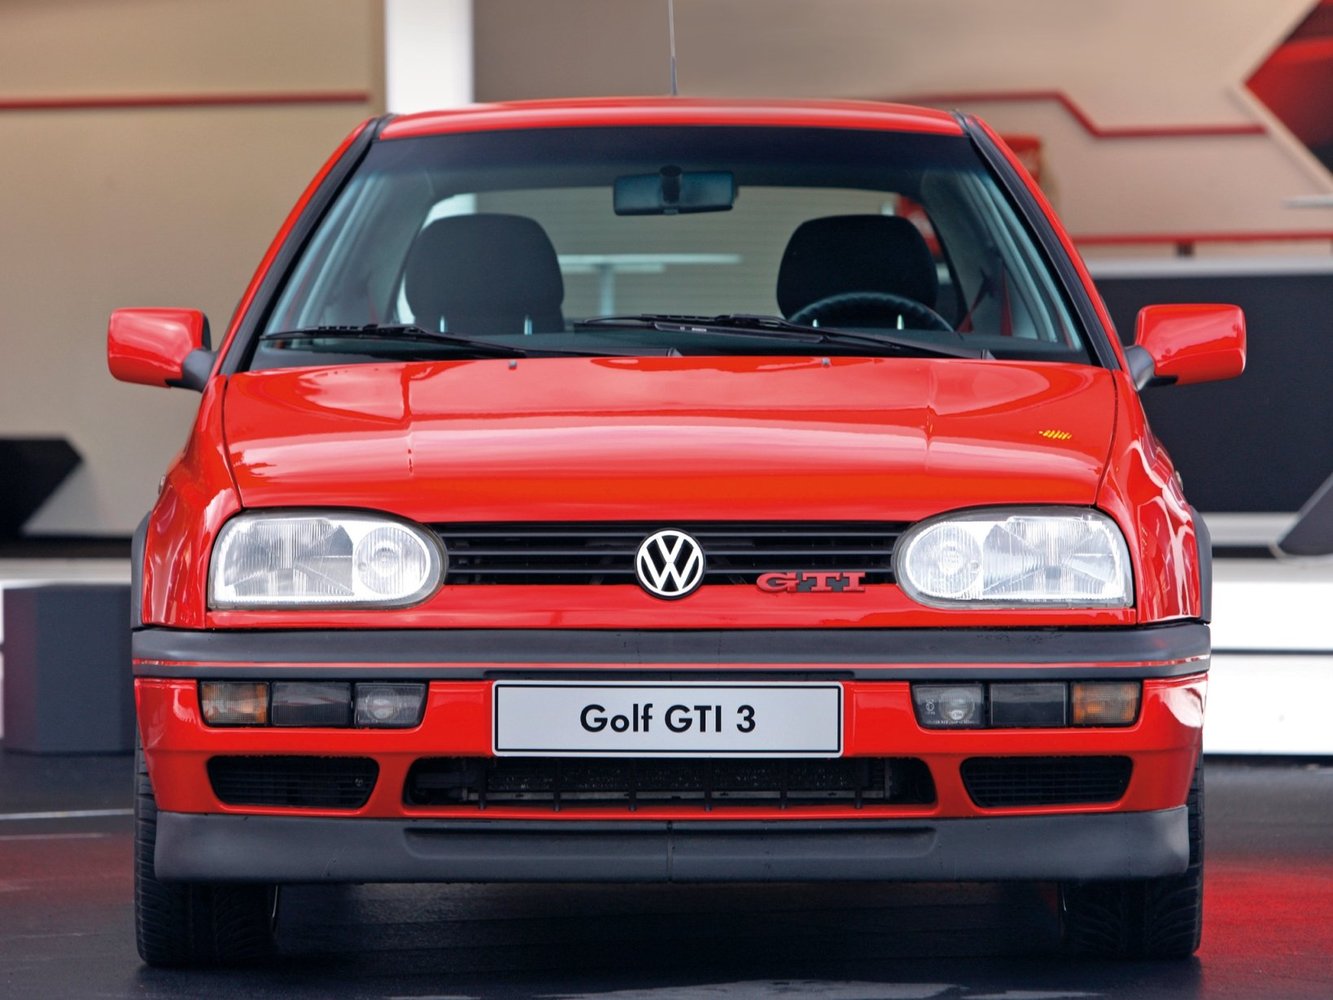 хэтчбек 3 дв. Volkswagen Golf GTI 1992 - 1997г выпуска модификация 2.0 MT (150 л.с.)